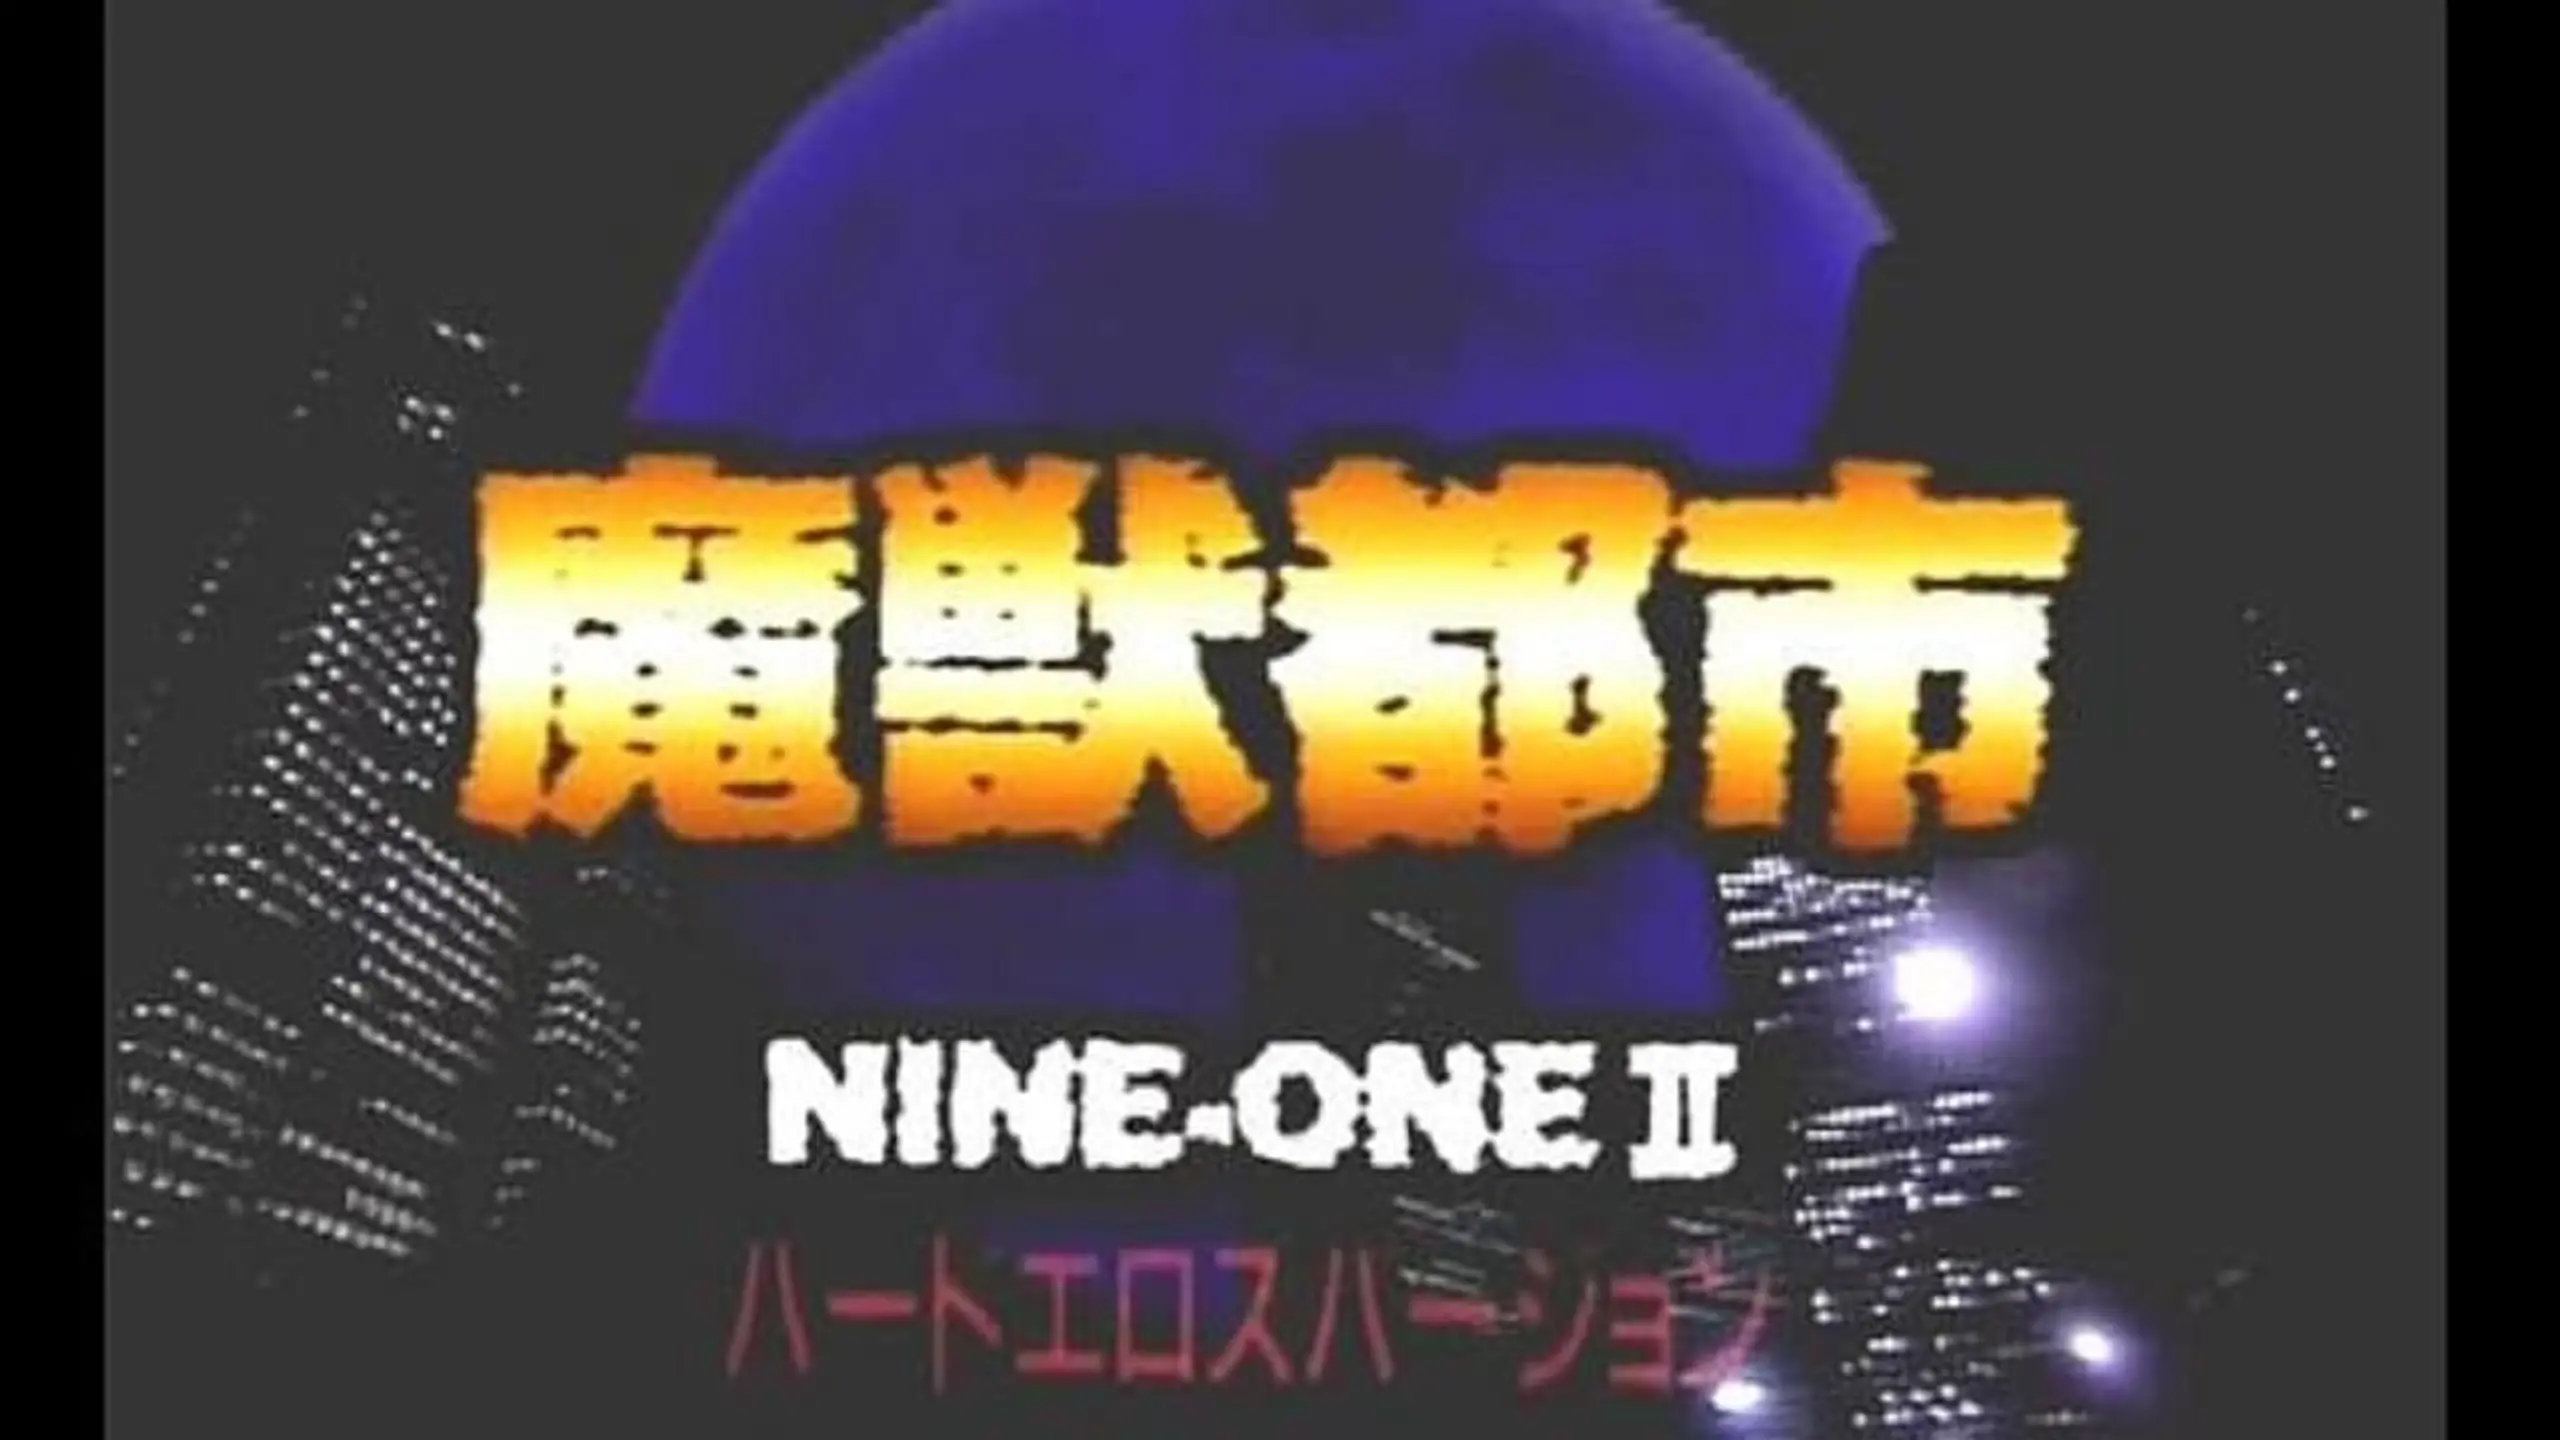 Nine-One II 魔獣都市